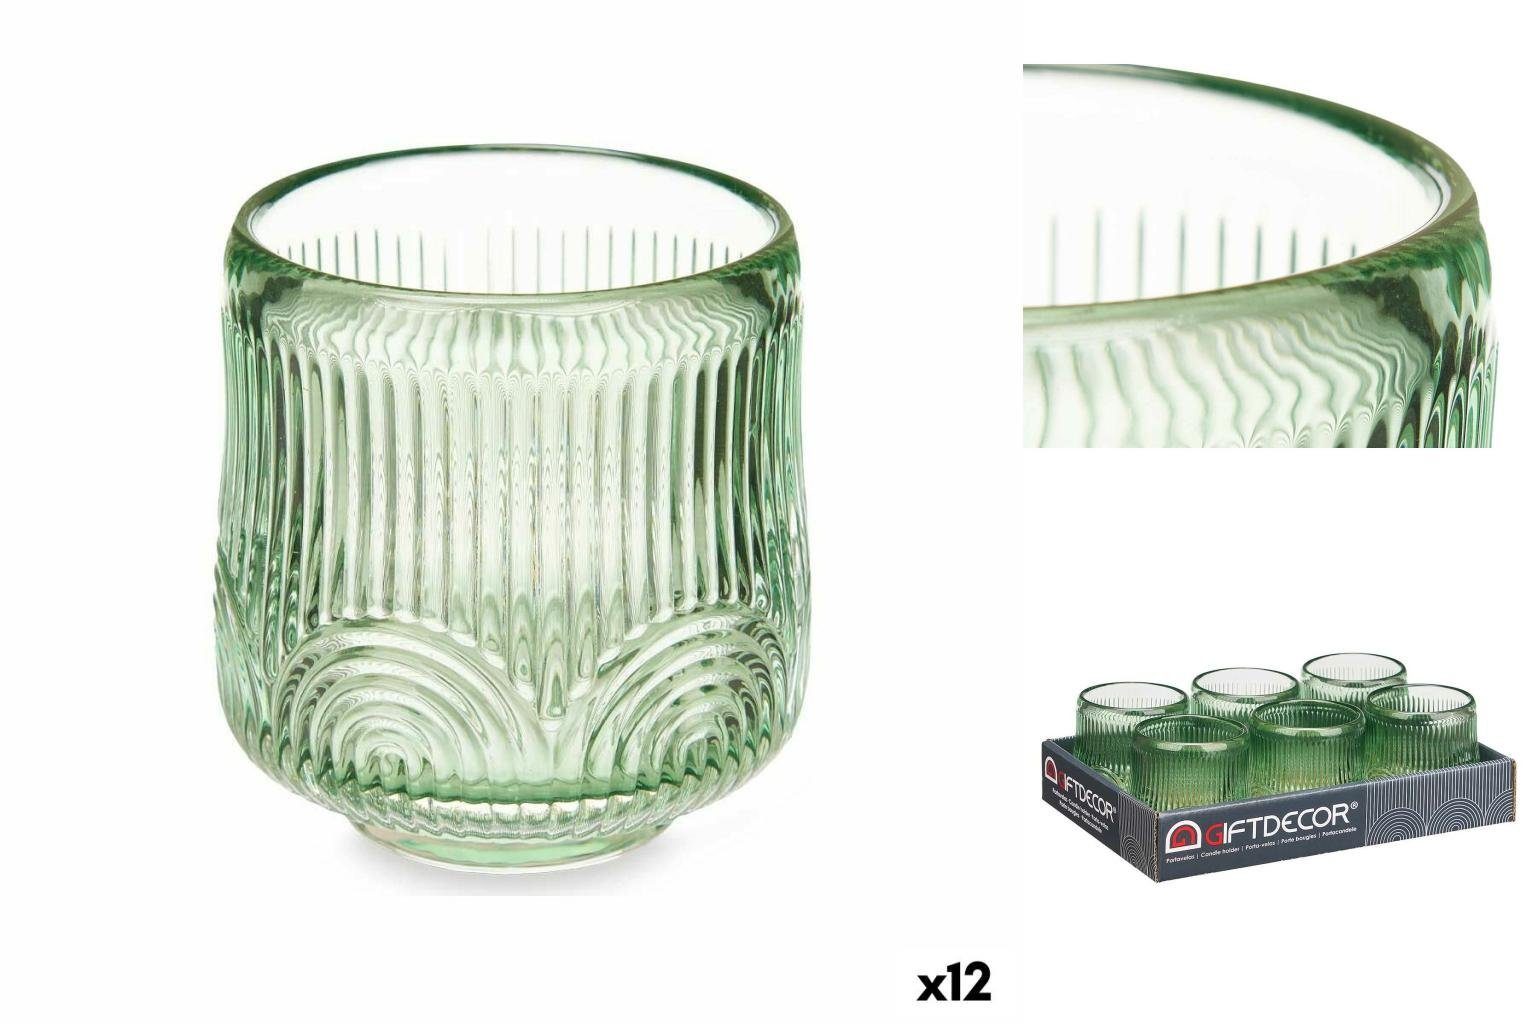 Gift Decor Windlicht Kerzenschale Streifen grün Glas 7,5 x 7,8 x 7,5 cm 12 Stück